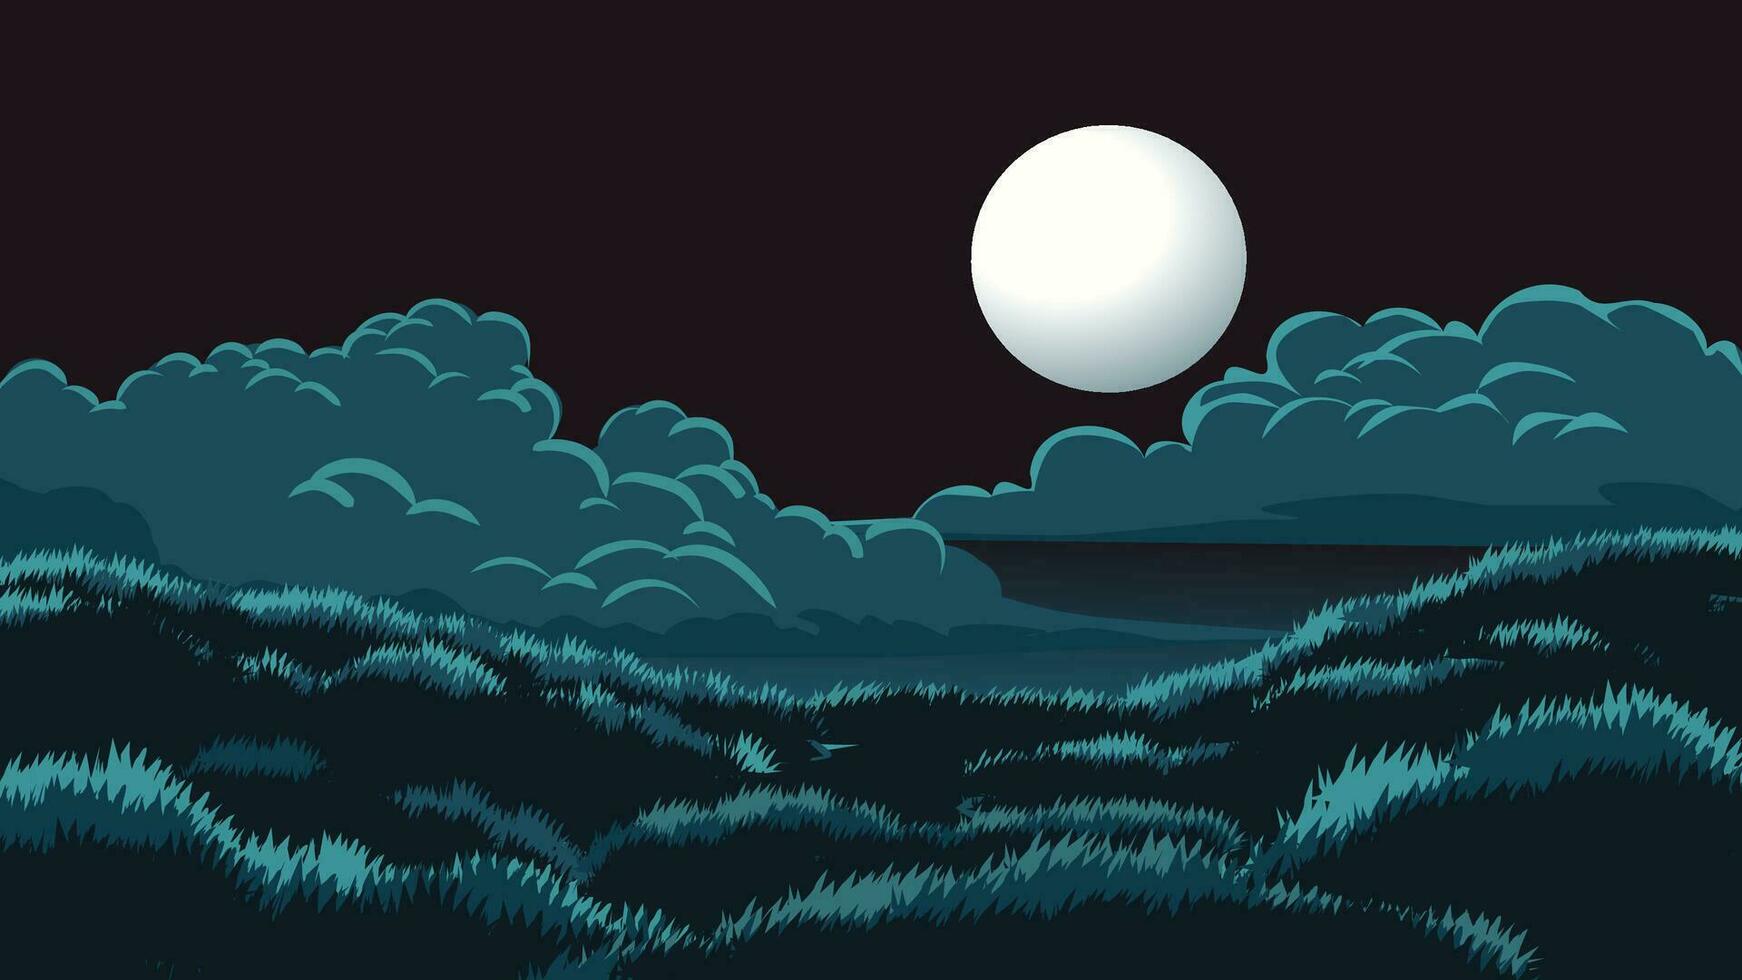 vektor illustration av full måne över gräsmark med moln